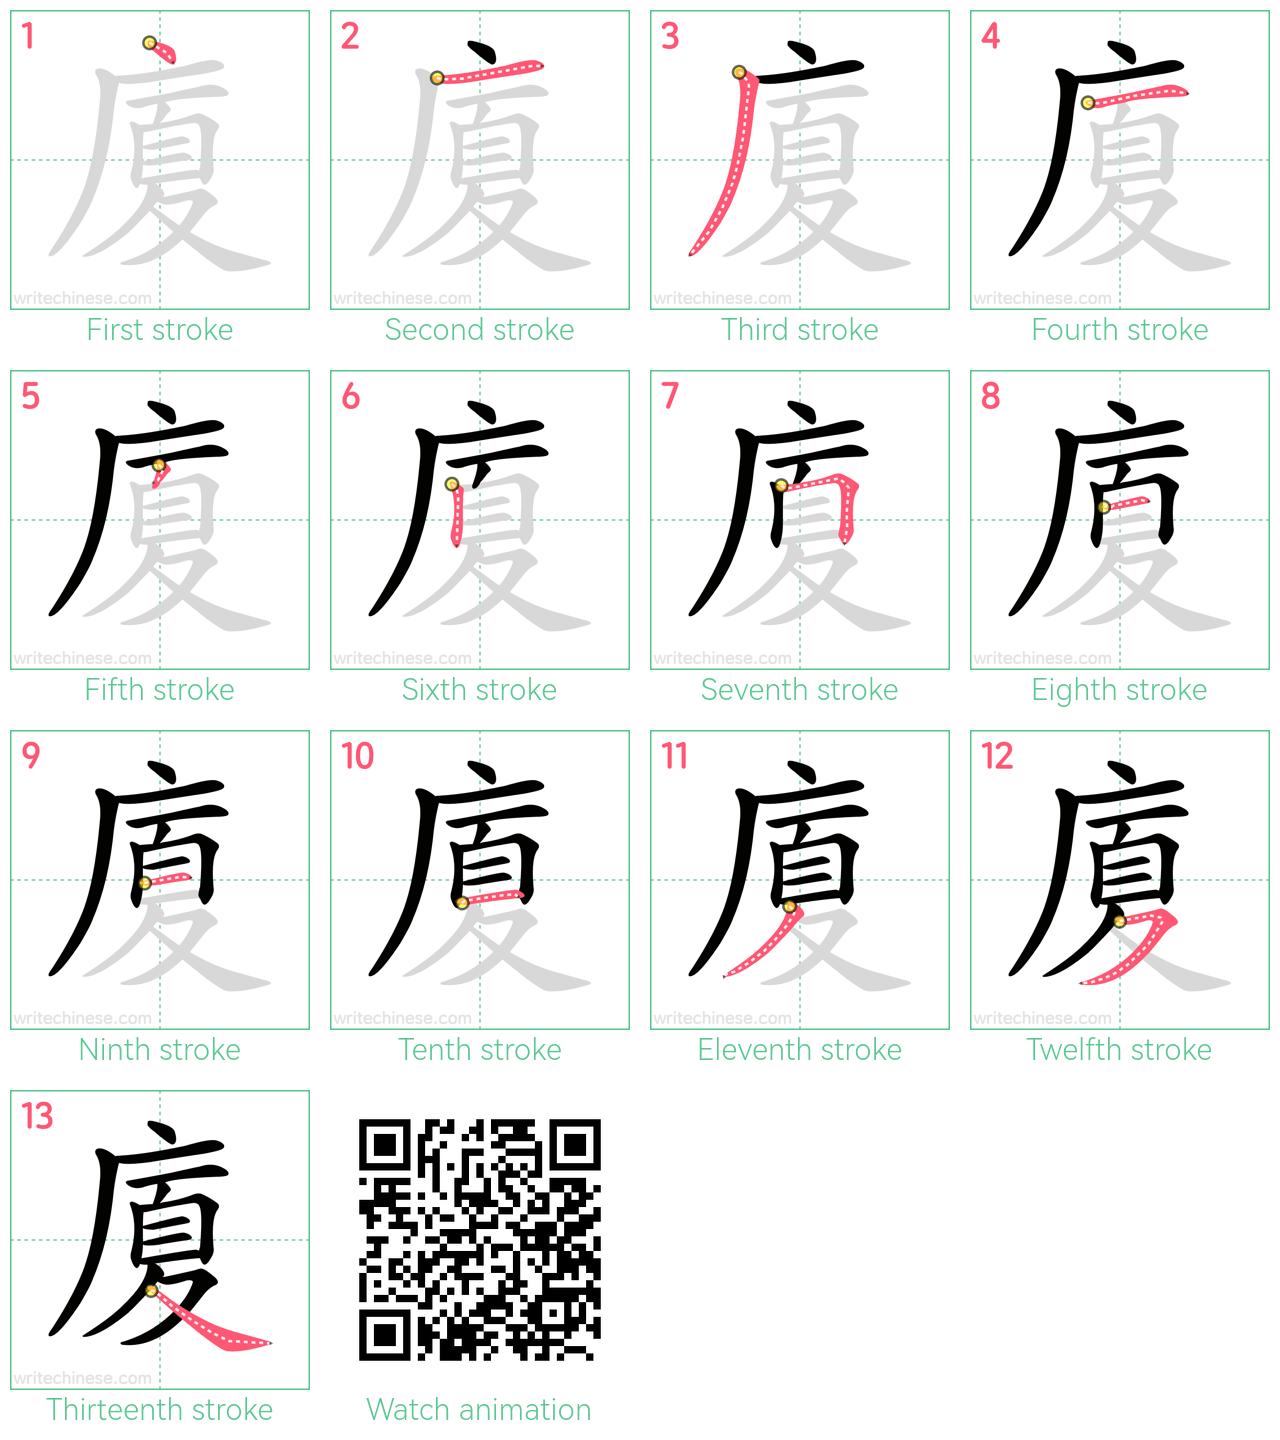 廈 step-by-step stroke order diagrams